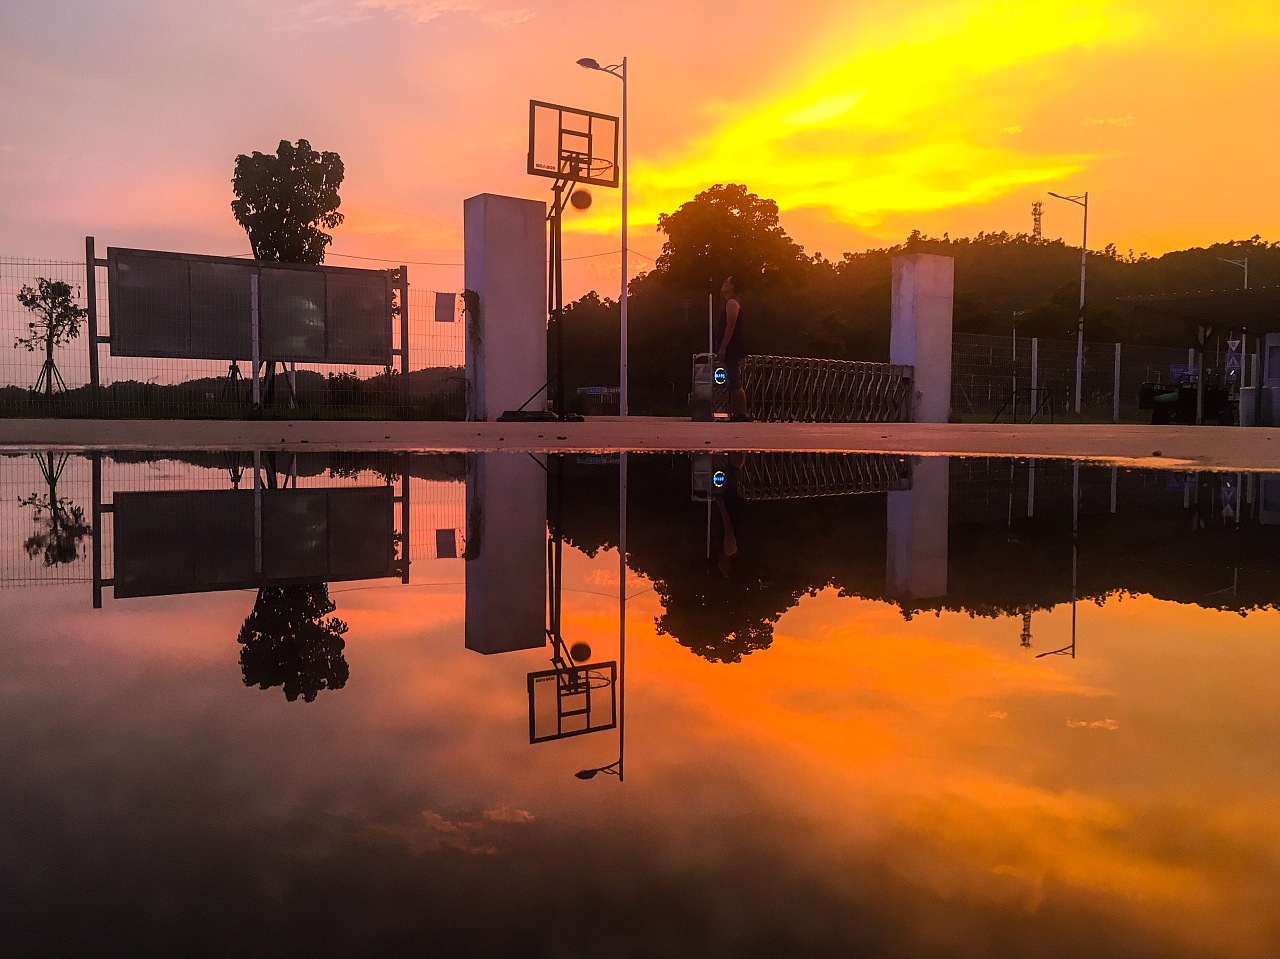 夕阳下的篮球